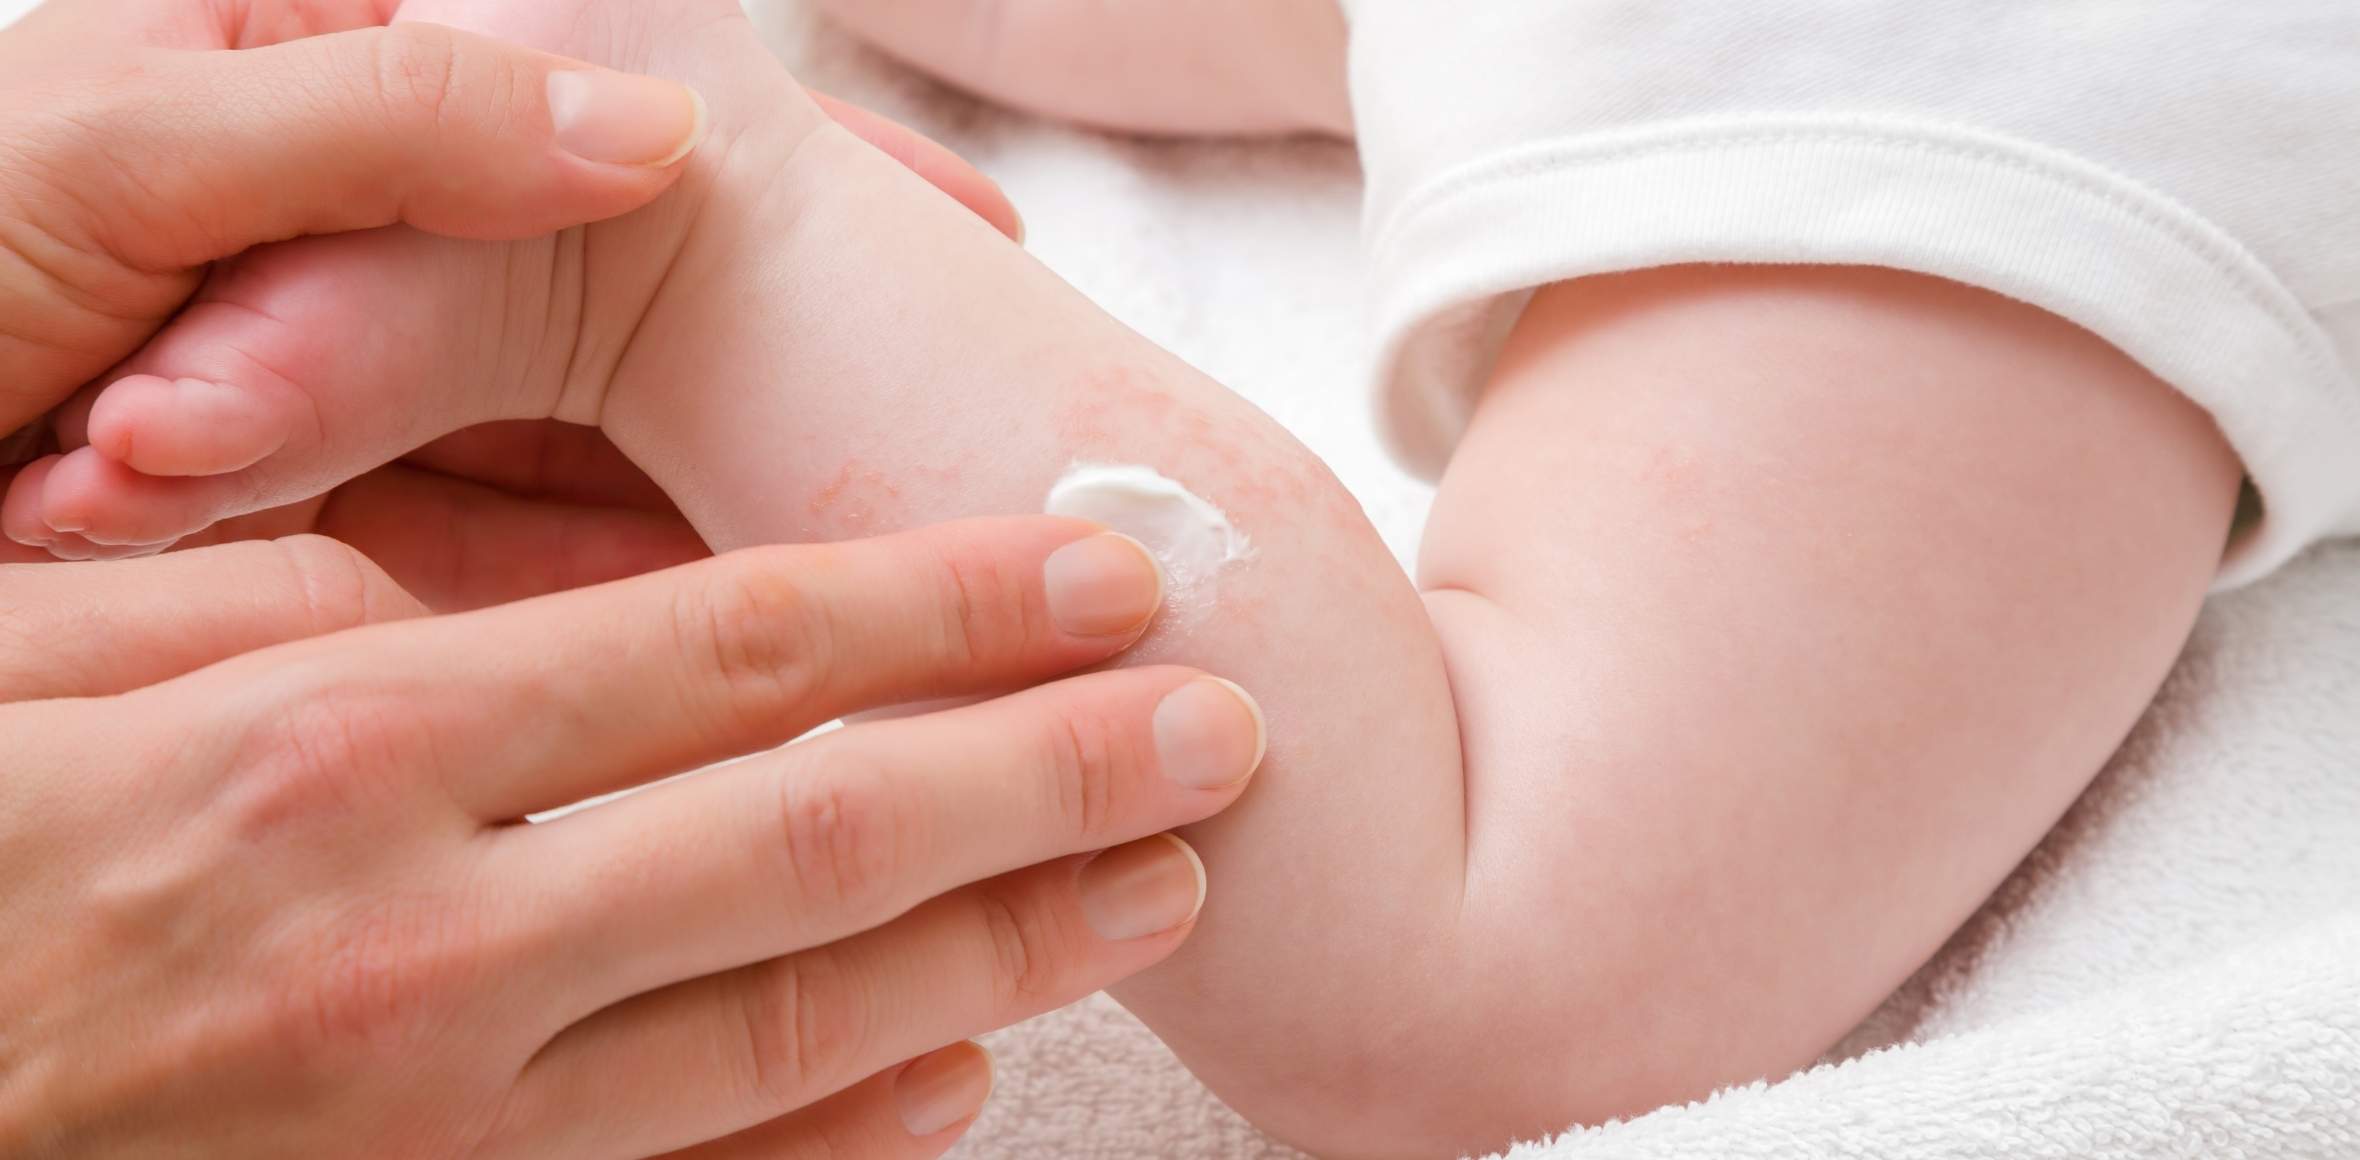 Die Haut deines Babys richtig pflegen - Eincremen nach dem Baden